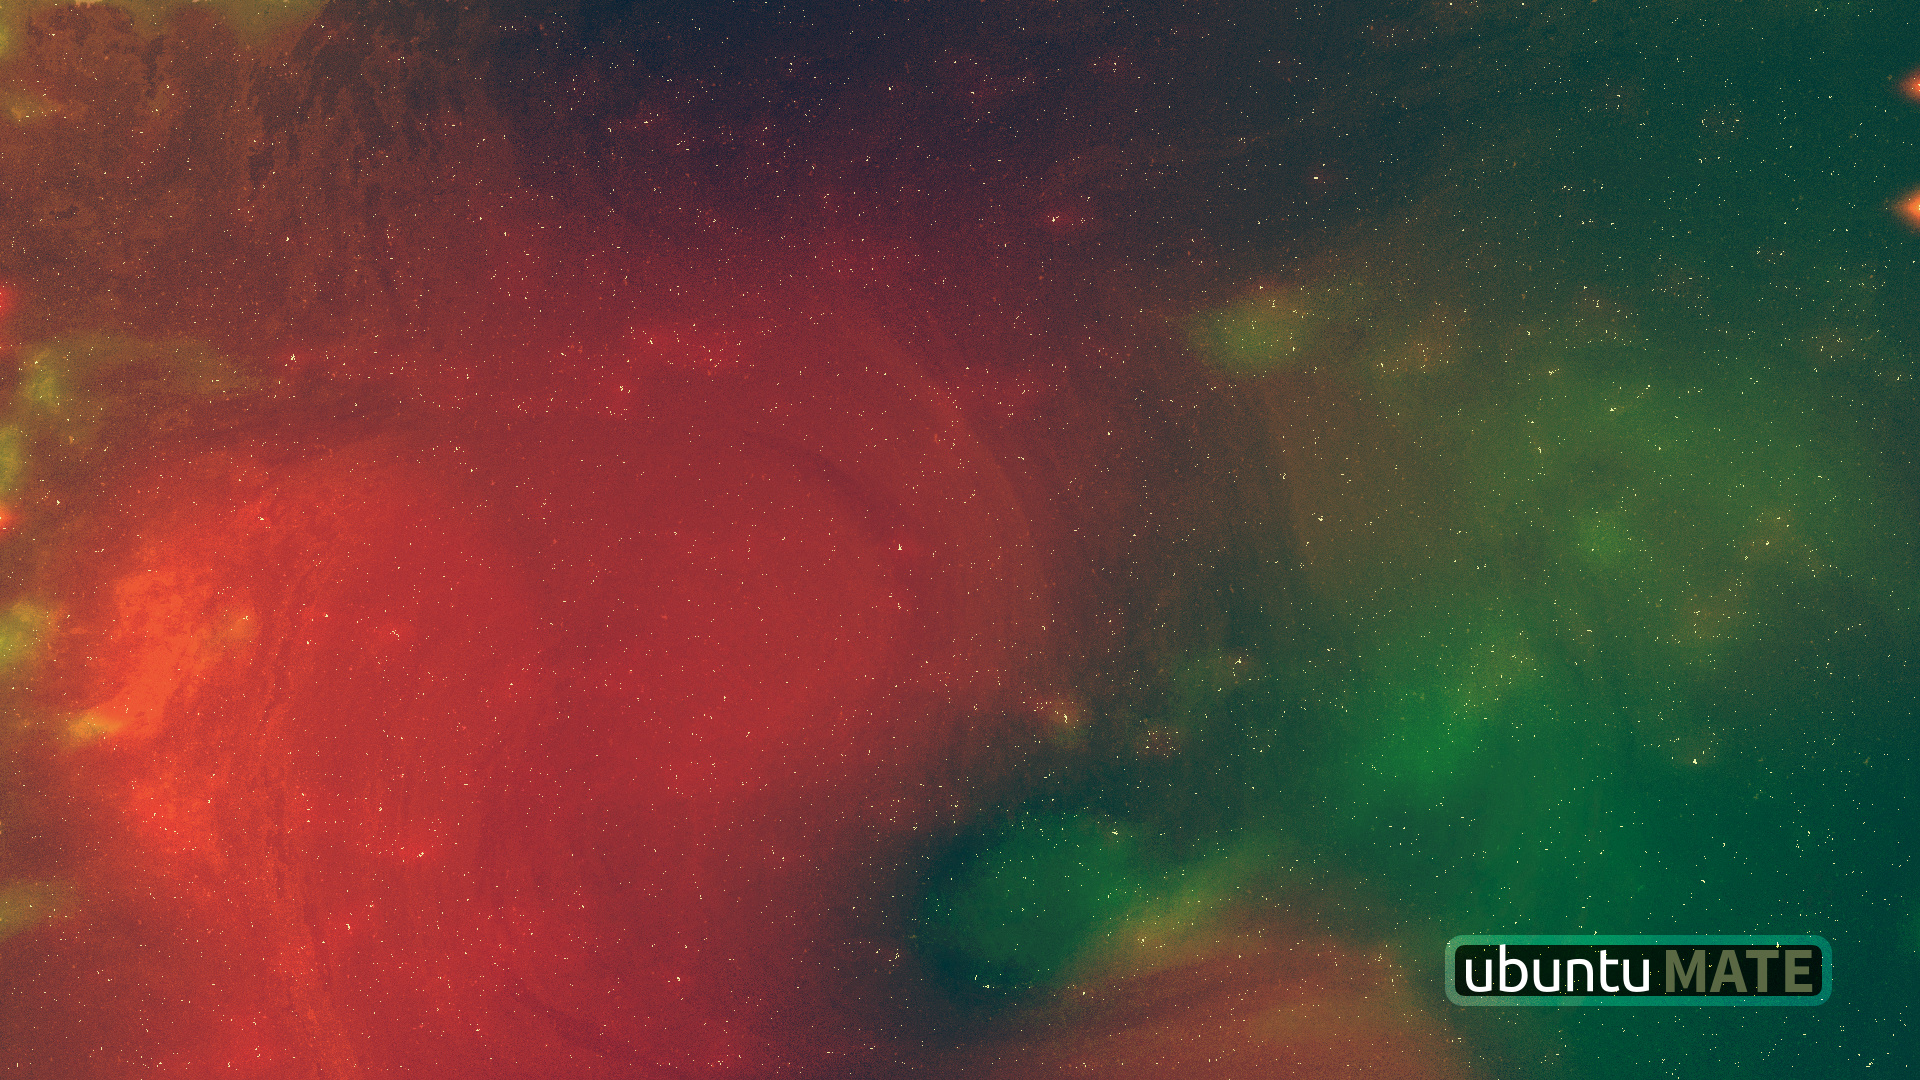 Space Wallpaper Artwork Ubuntu Mate Munity